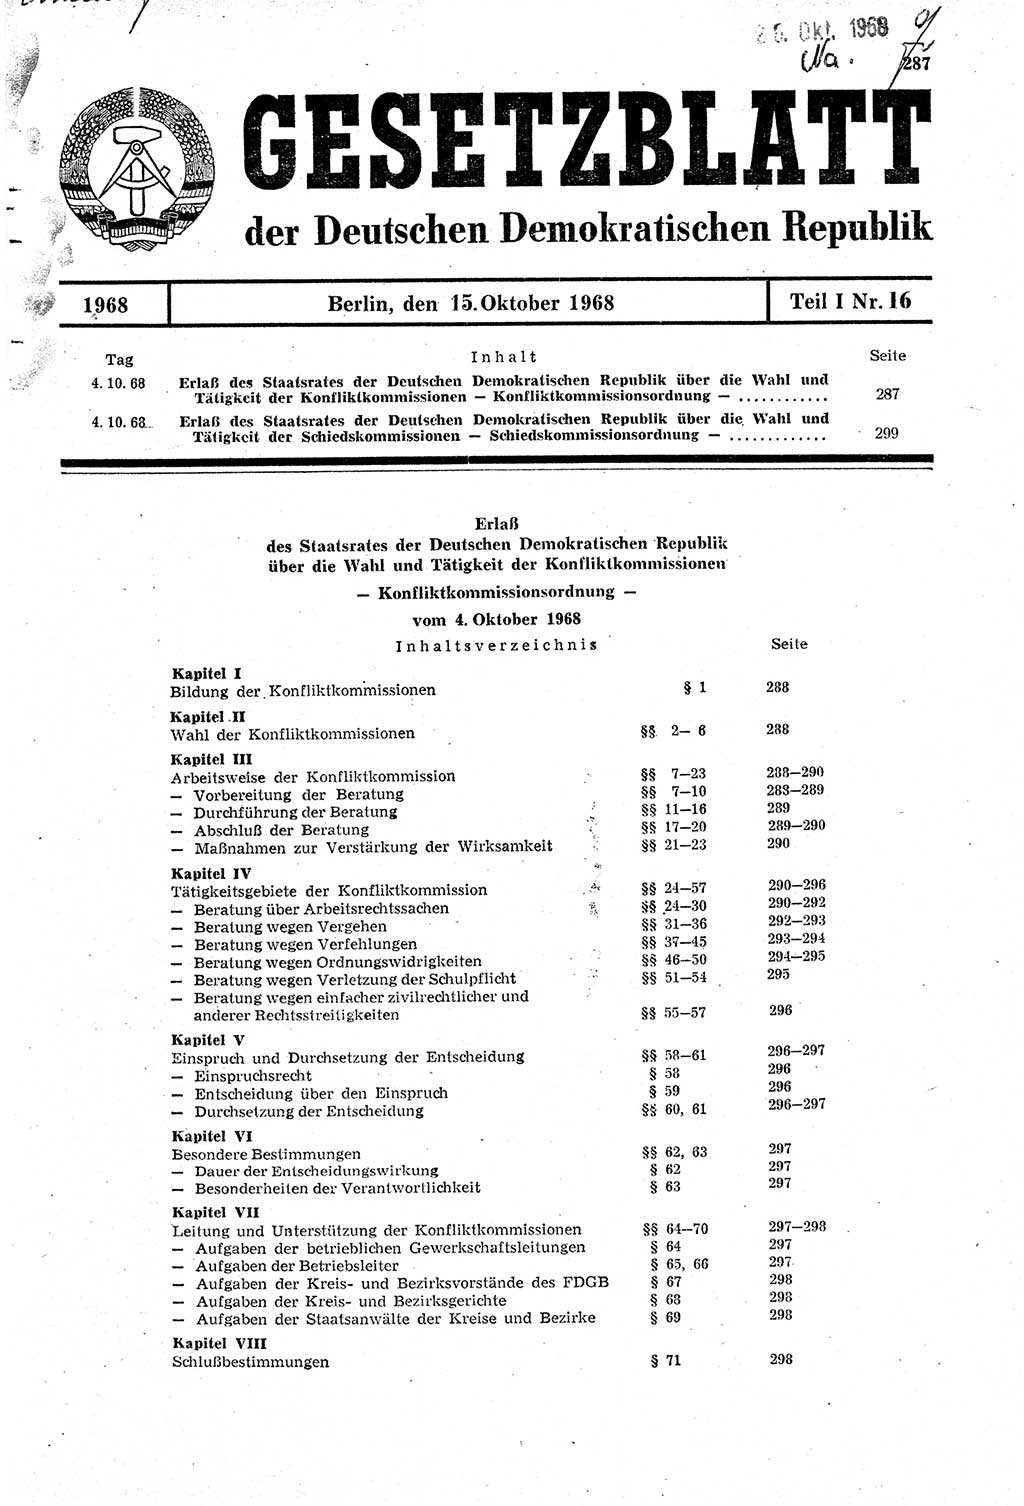 Gesetzblatt (GBl.) der Deutschen Demokratischen Republik (DDR) Teil Ⅰ 1968, Seite 287 (GBl. DDR Ⅰ 1968, S. 287)